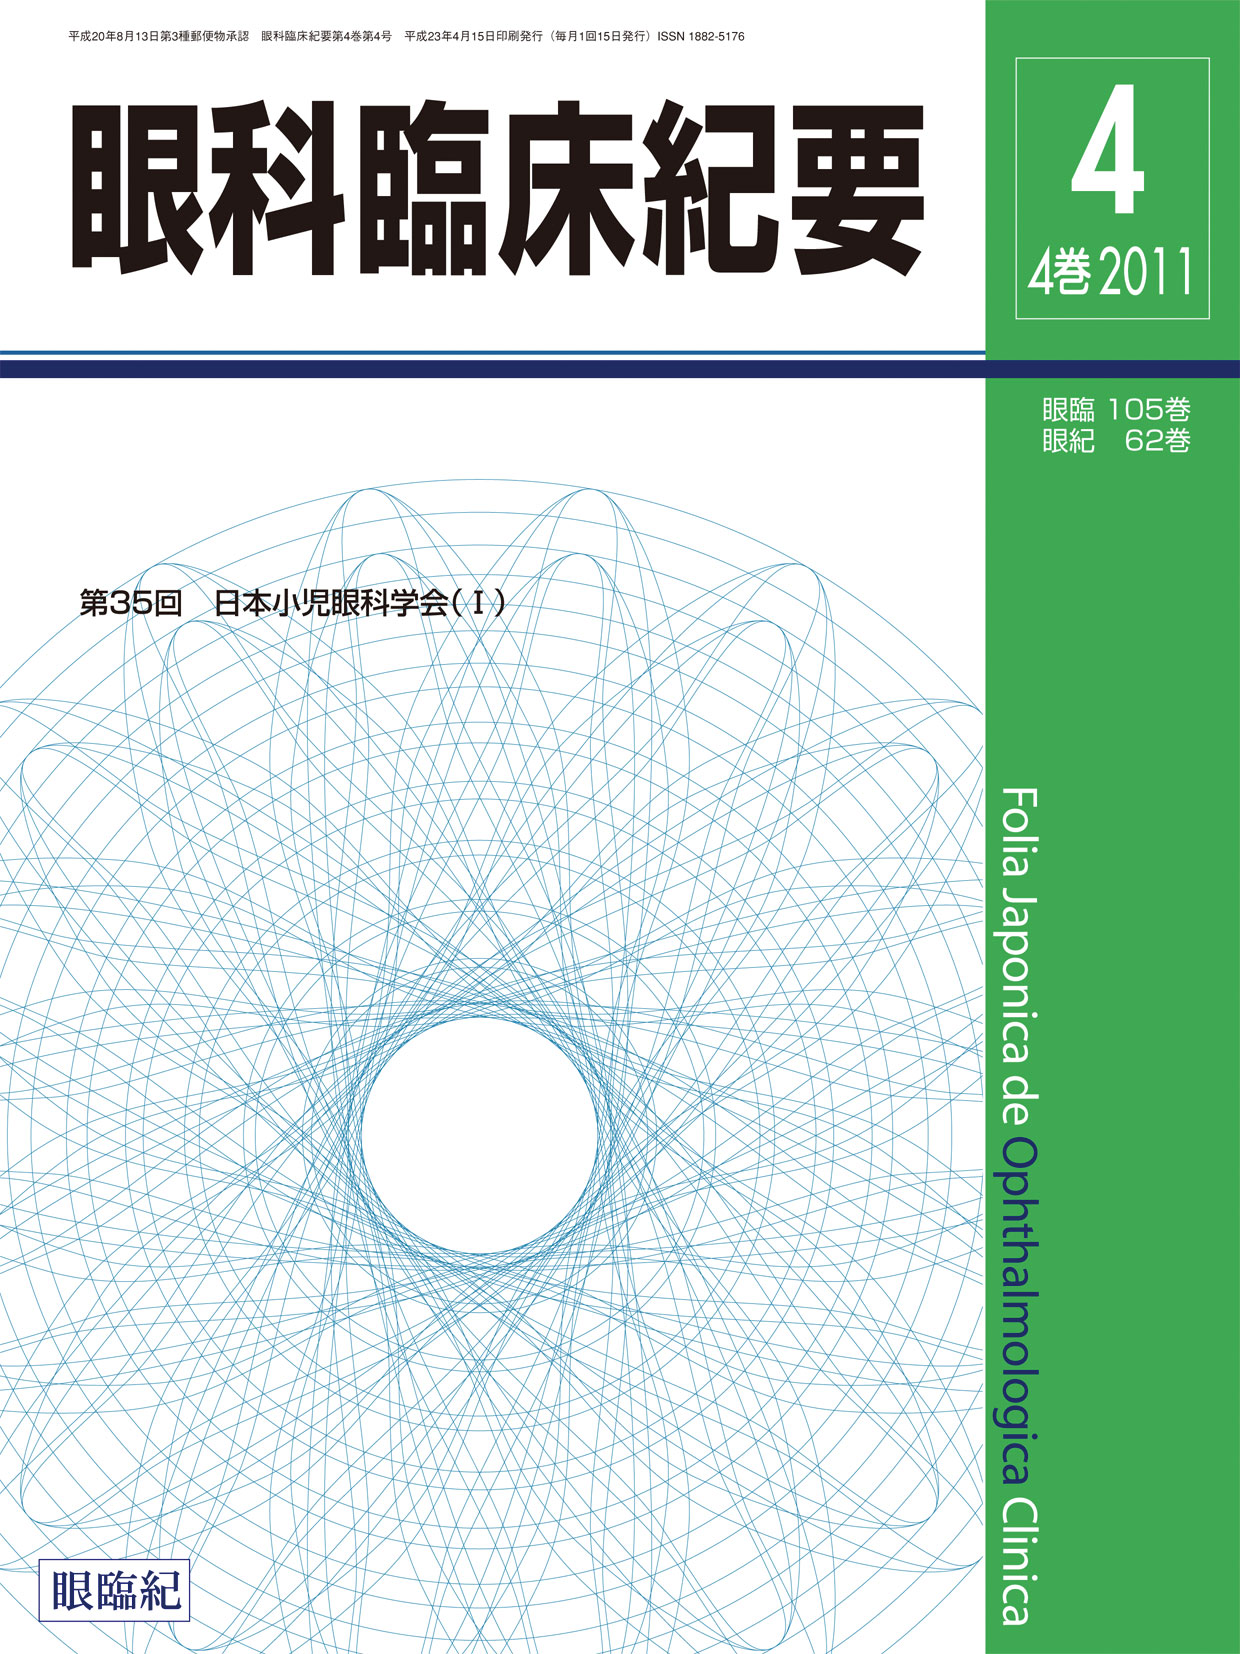 2011年 / 第4巻 / 第4号 | 眼科臨床紀要